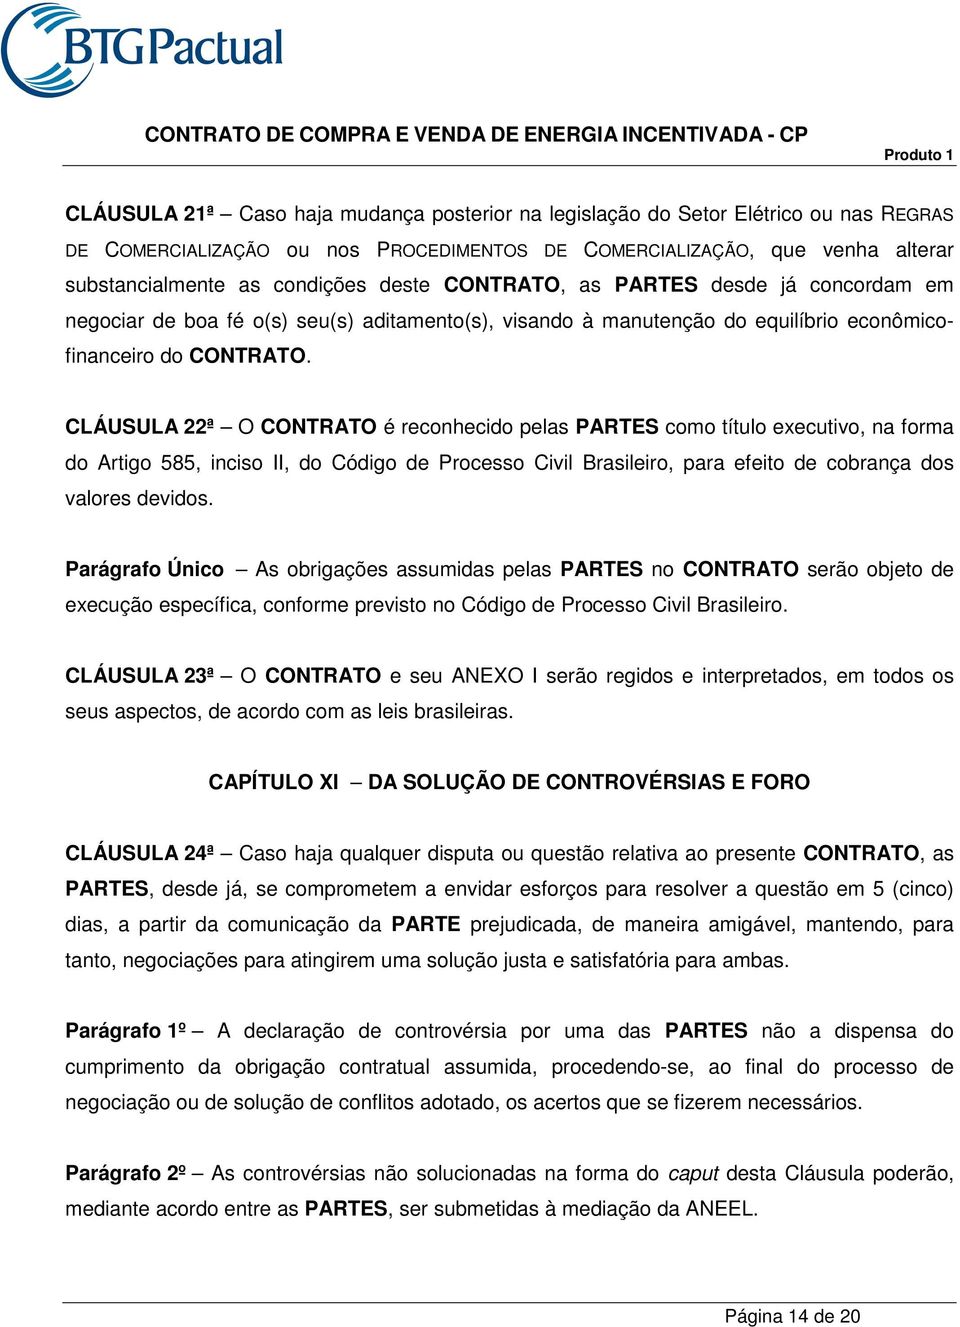 CLÁUSULA 22ª O CONTRATO é reconhecido pelas PARTES como título executivo, na forma do Artigo 585, inciso II, do Código de Processo Civil Brasileiro, para efeito de cobrança dos valores devidos.